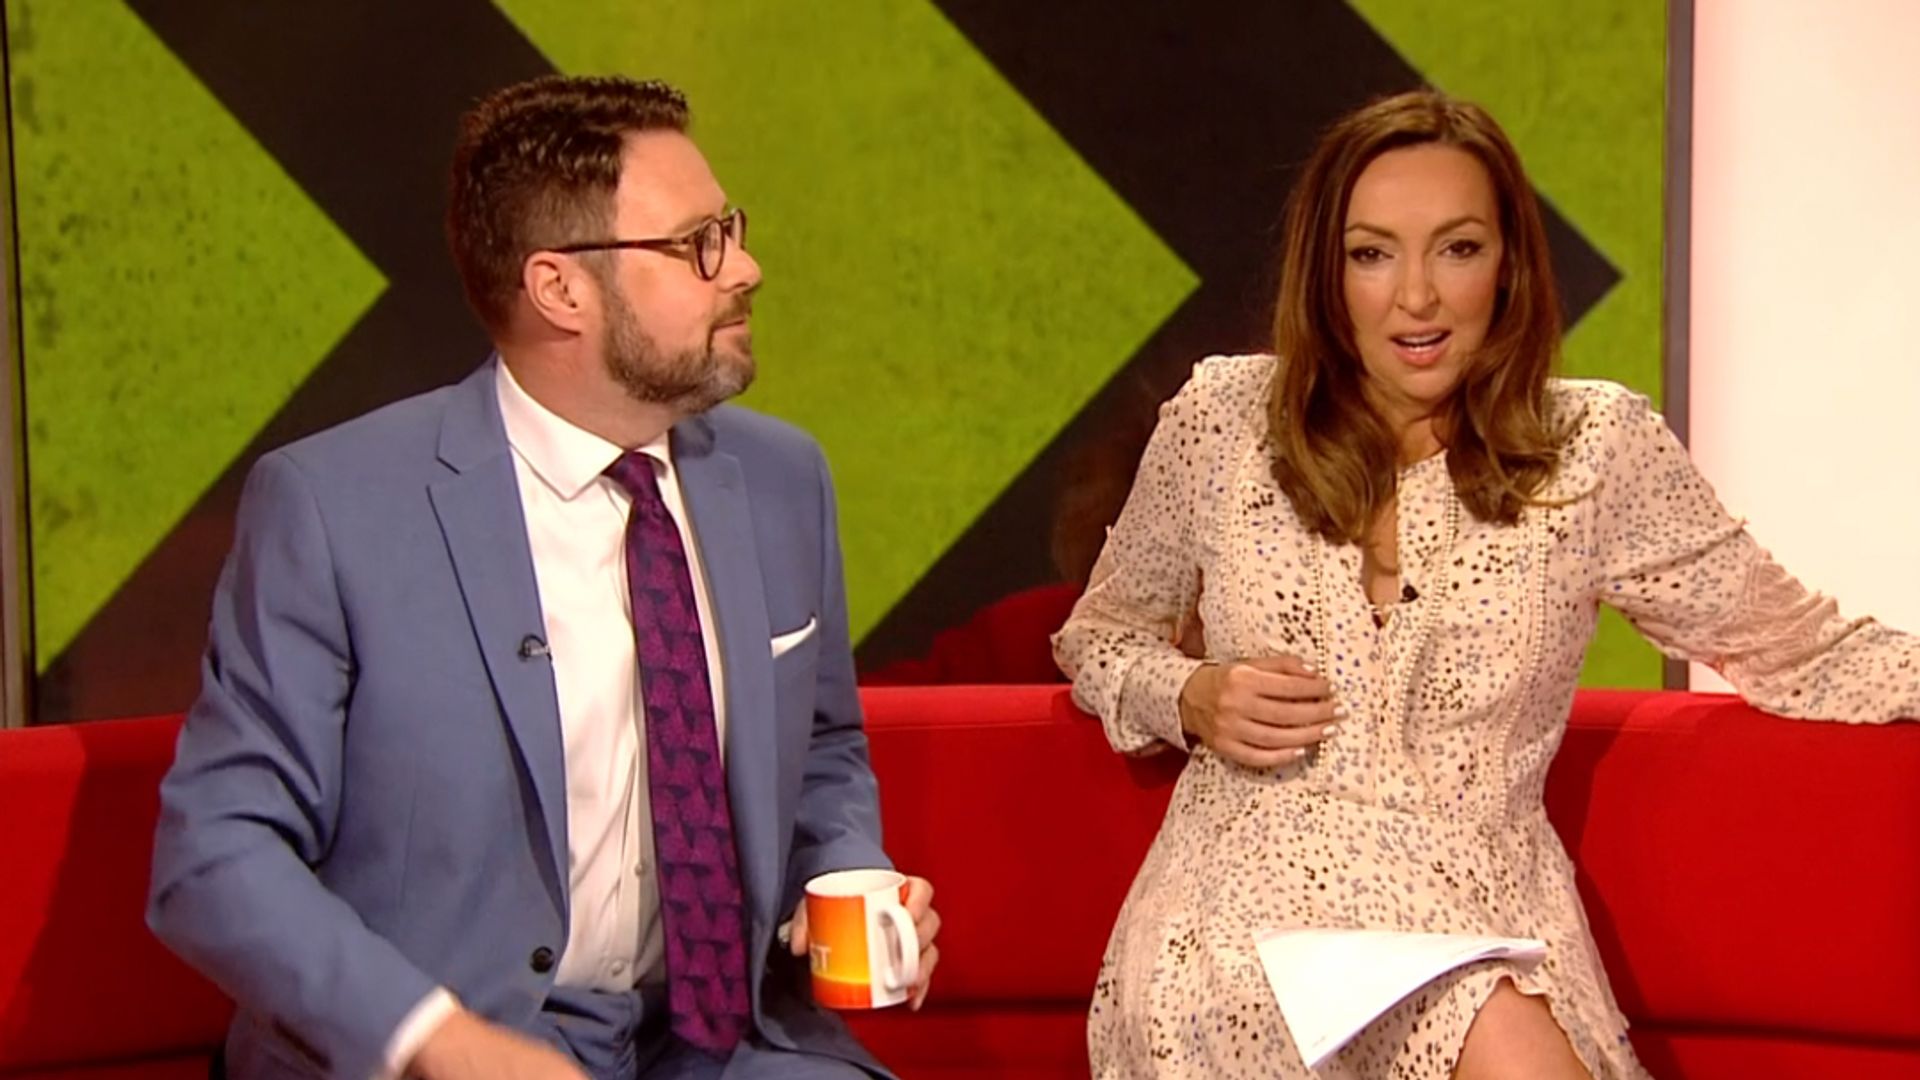 Sally Nugent and Jon Kay on BBC Breakfast